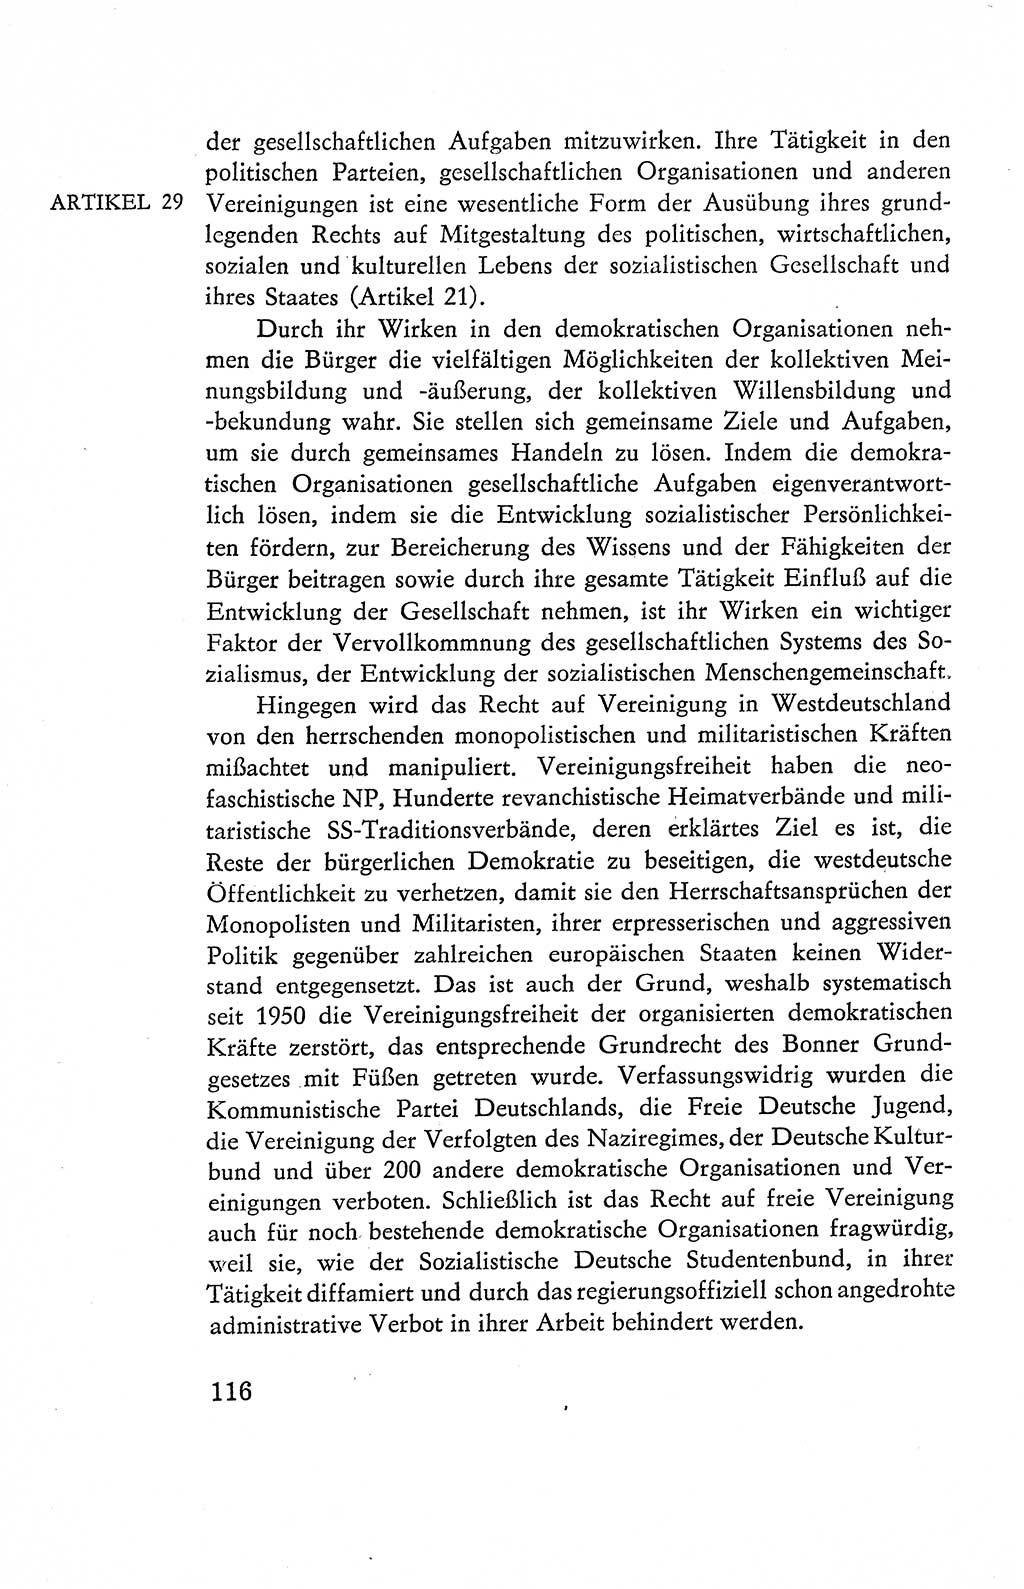 Verfassung der Deutschen Demokratischen Republik (DDR), Dokumente, Kommentar 1969, Band 2, Seite 116 (Verf. DDR Dok. Komm. 1969, Bd. 2, S. 116)